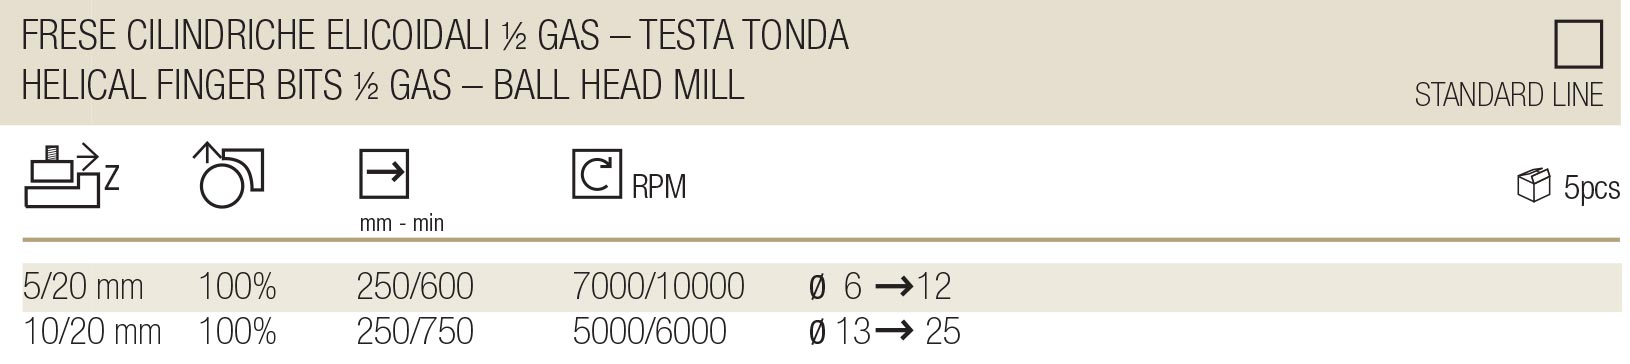 Frese Cilindriche Elicoidali ½ Gas – Testa Tonda - Standard Line